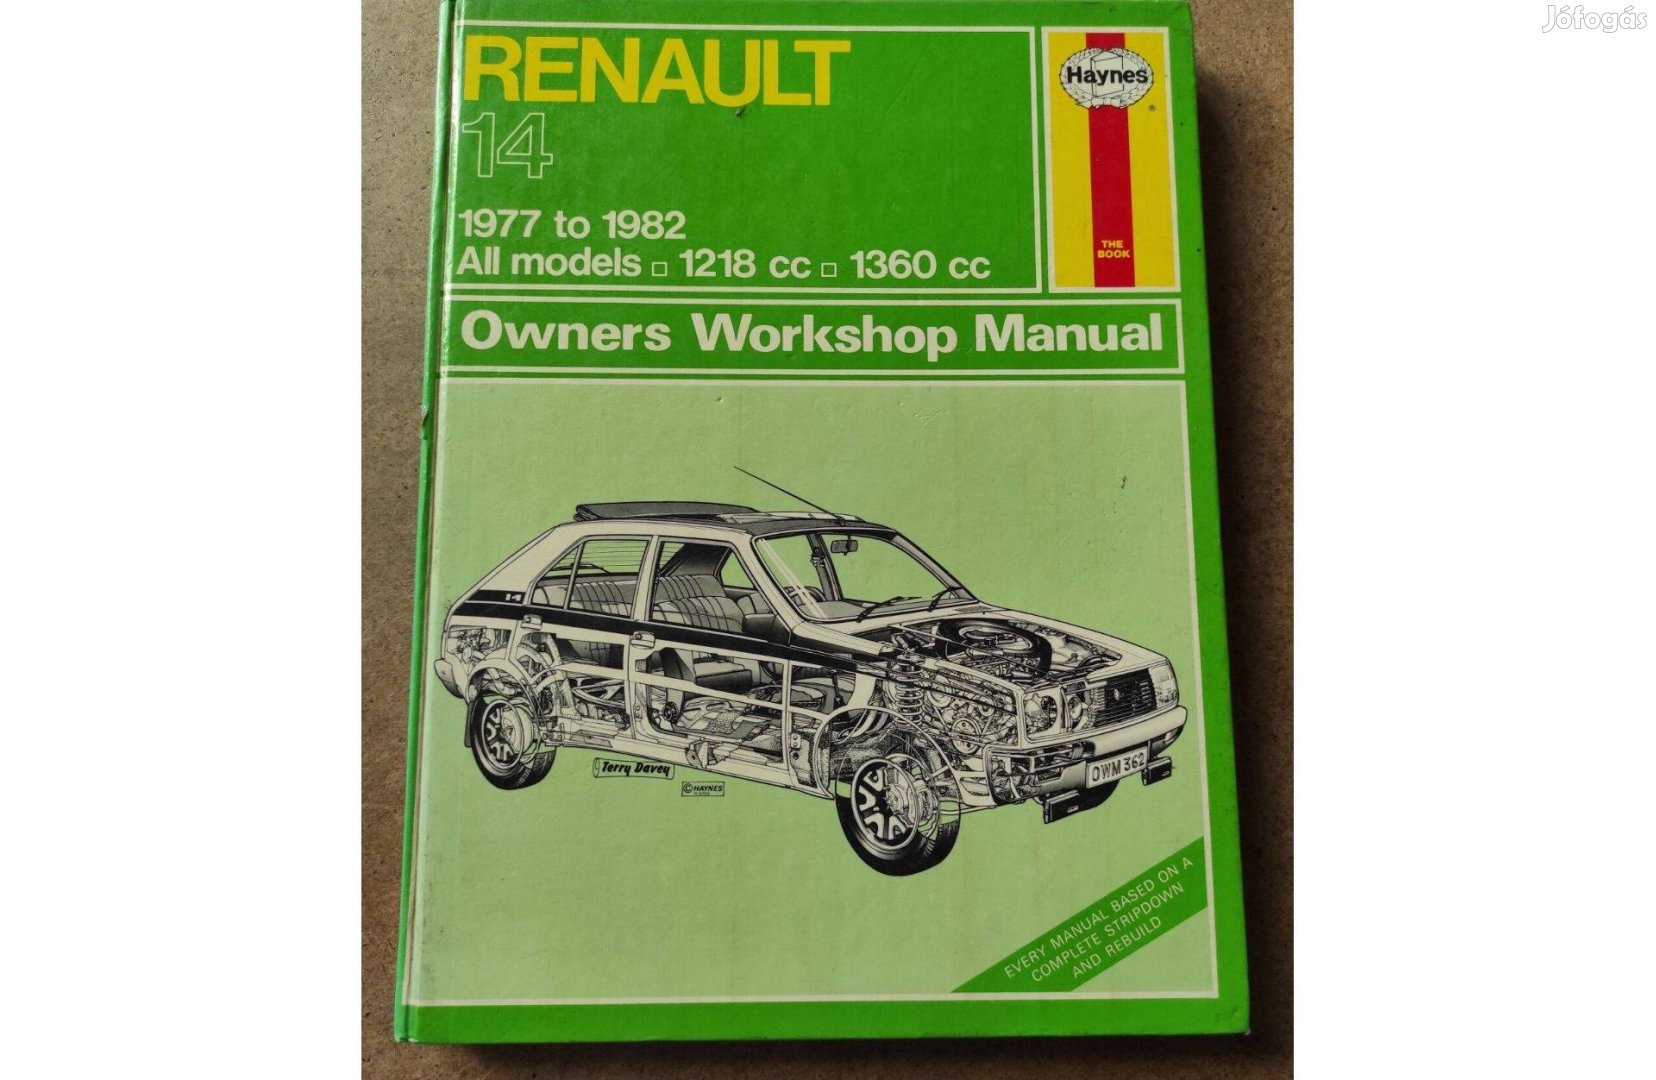 Renault 14 javítási karbantartási kézikönyv